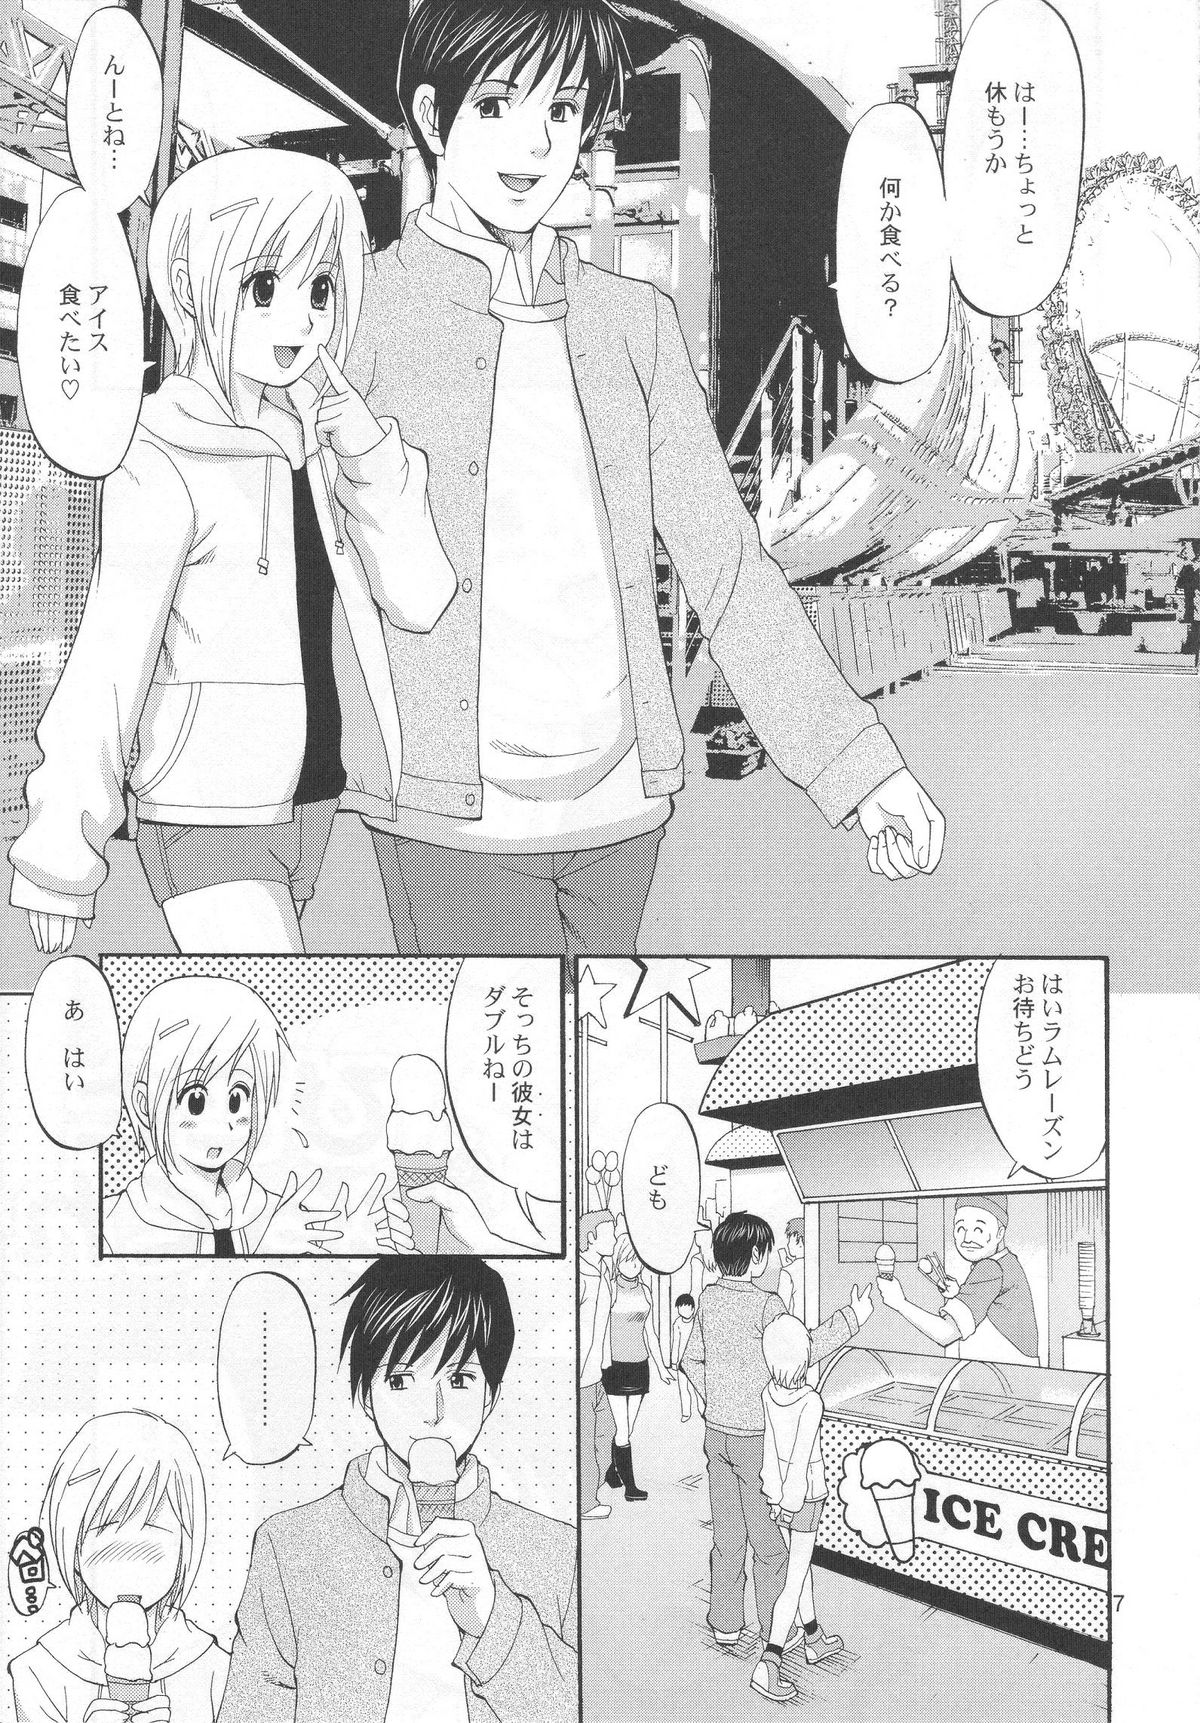 (COMIC1) [Saigado] Boku no Pico Comic + Koushiki Character Genanshuu (Boku no Pico) page 5 full